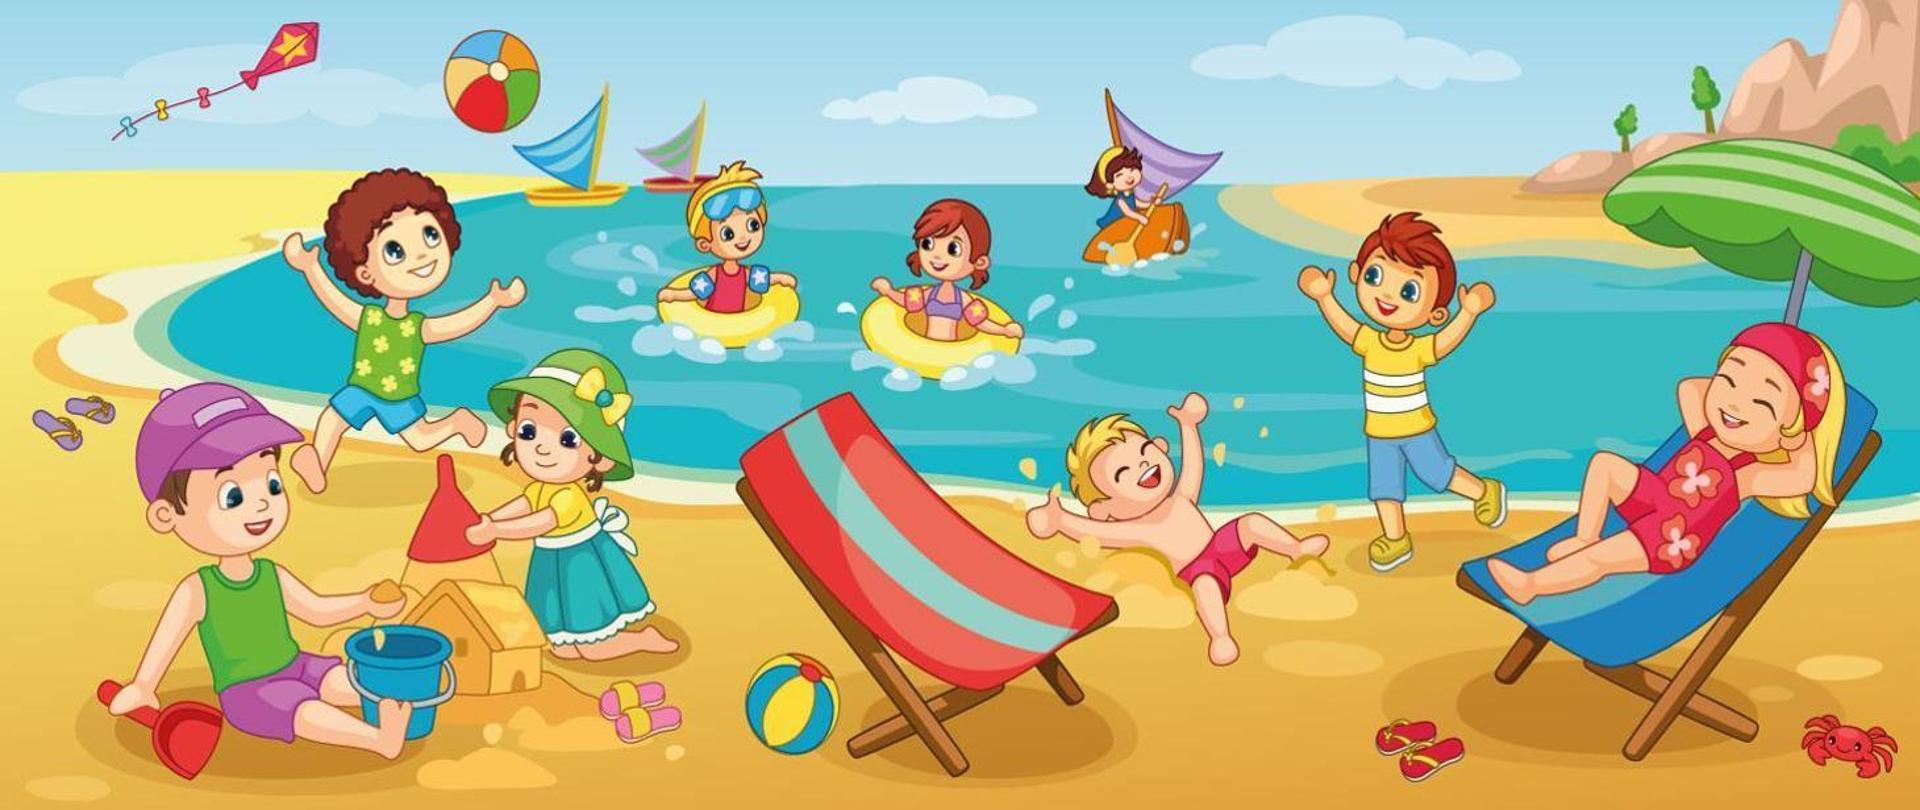 BEZPIECZEŃSTWO NAD WODĄ. Obrazek przedstawia dzieci bawiące się nad wodą.